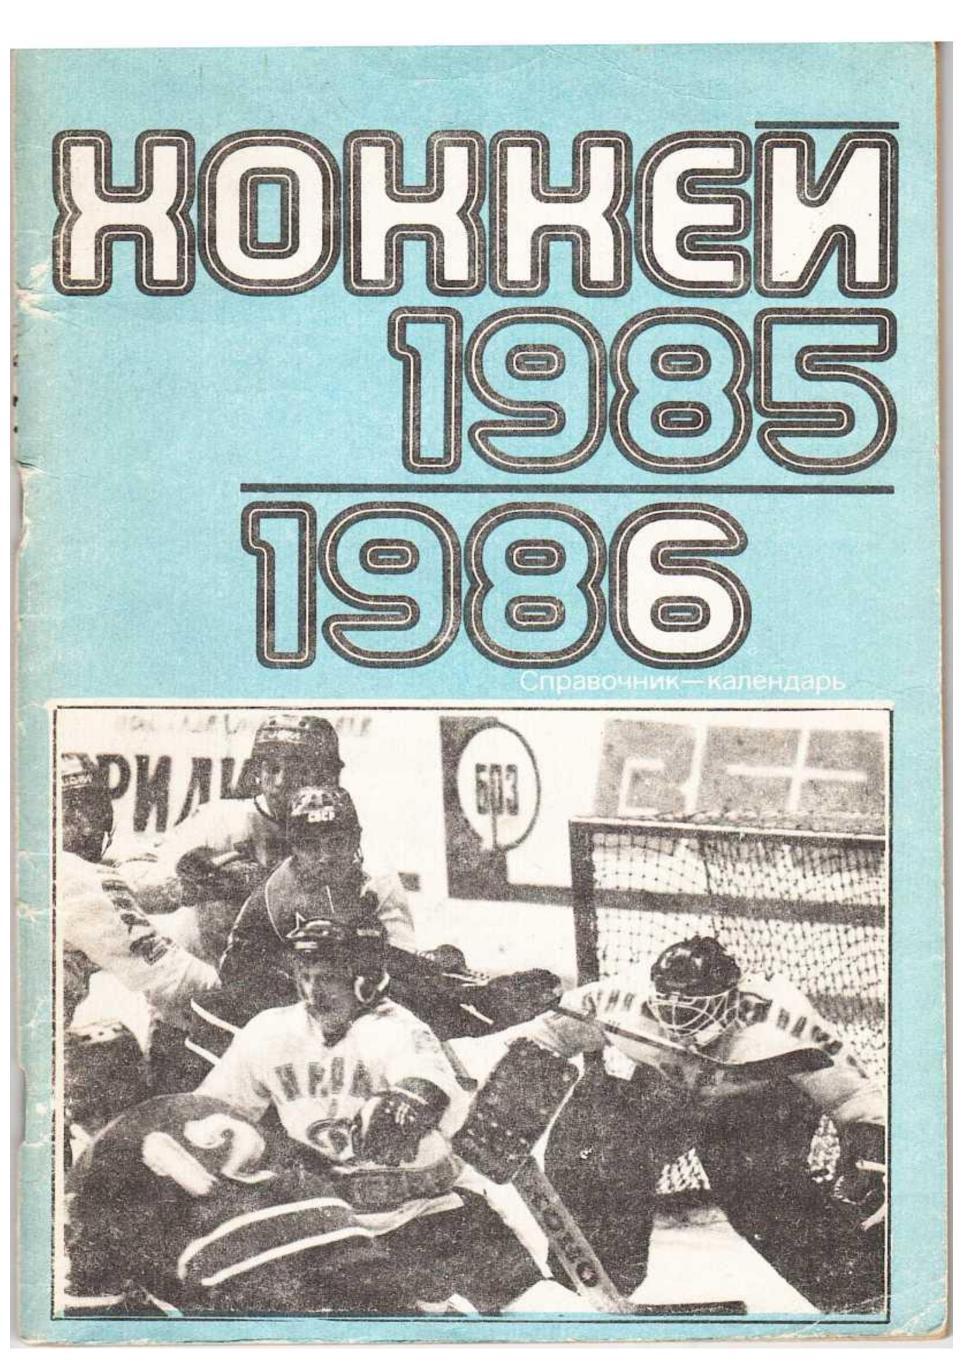 Хоккей 1985–1986. Справочник-календарь.